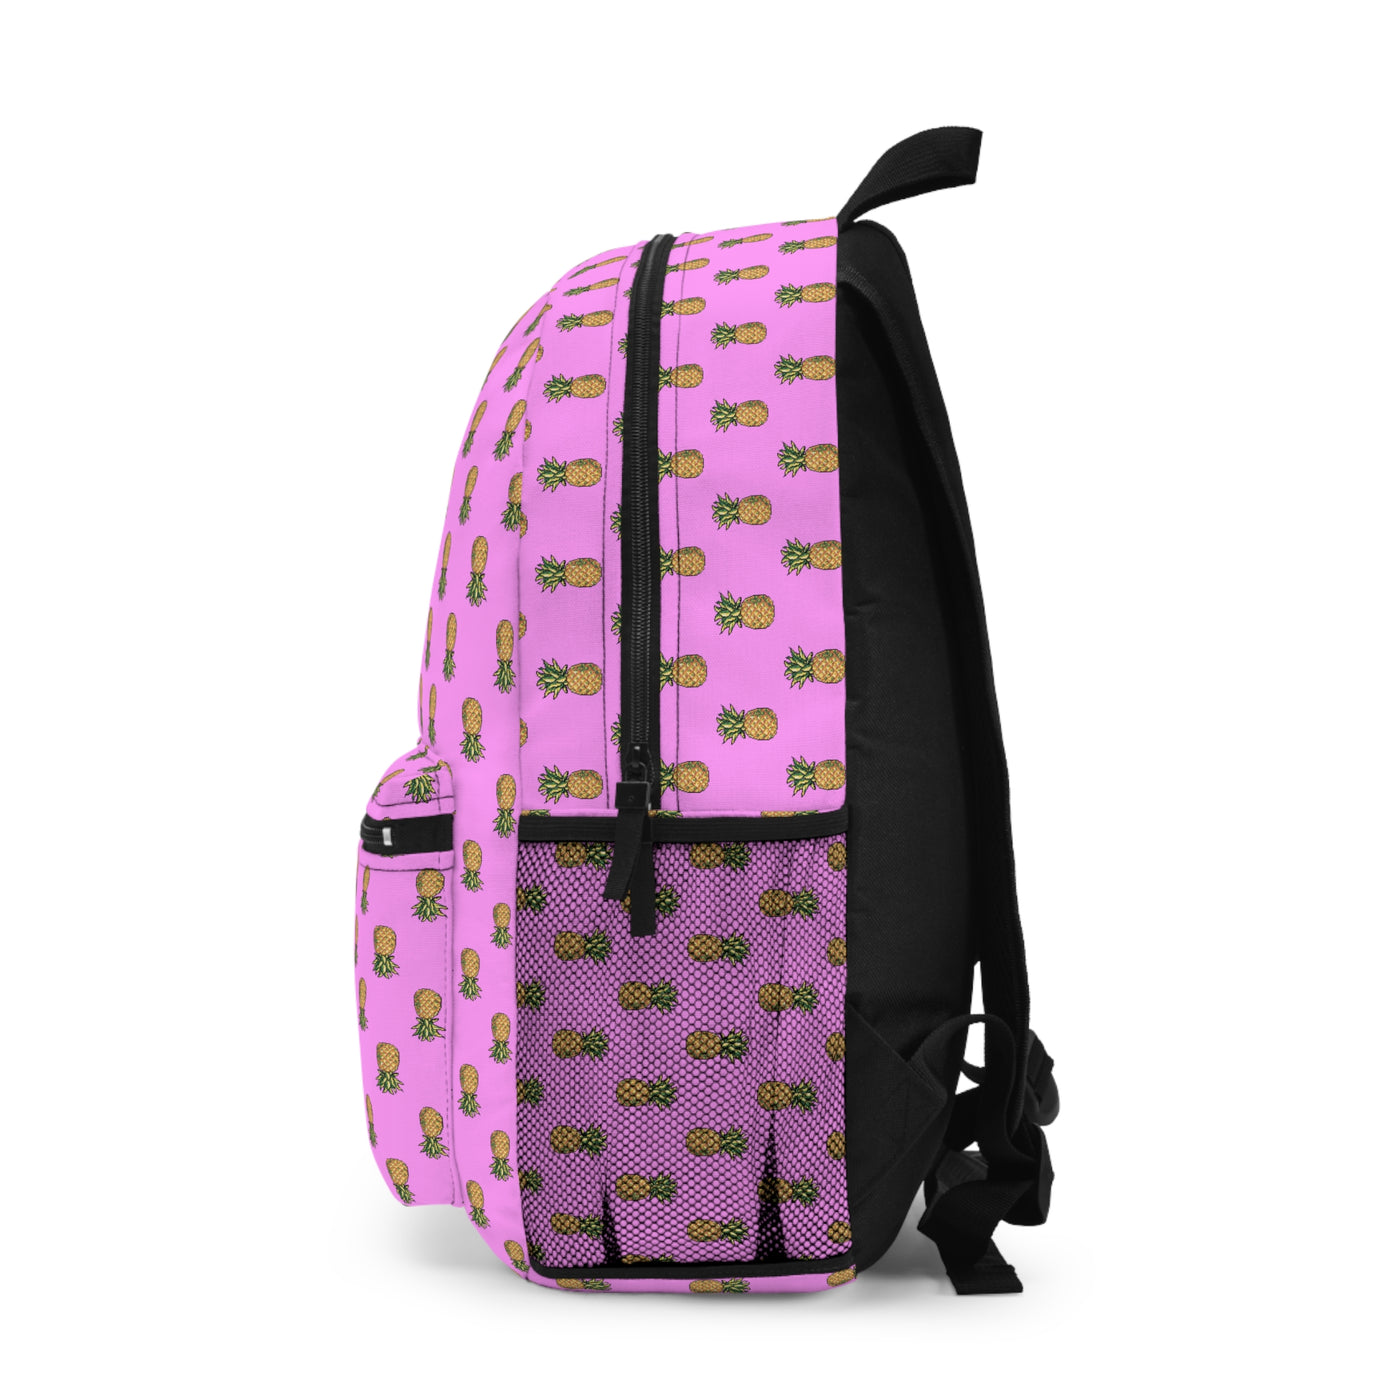 8-BIT Pink Backpack